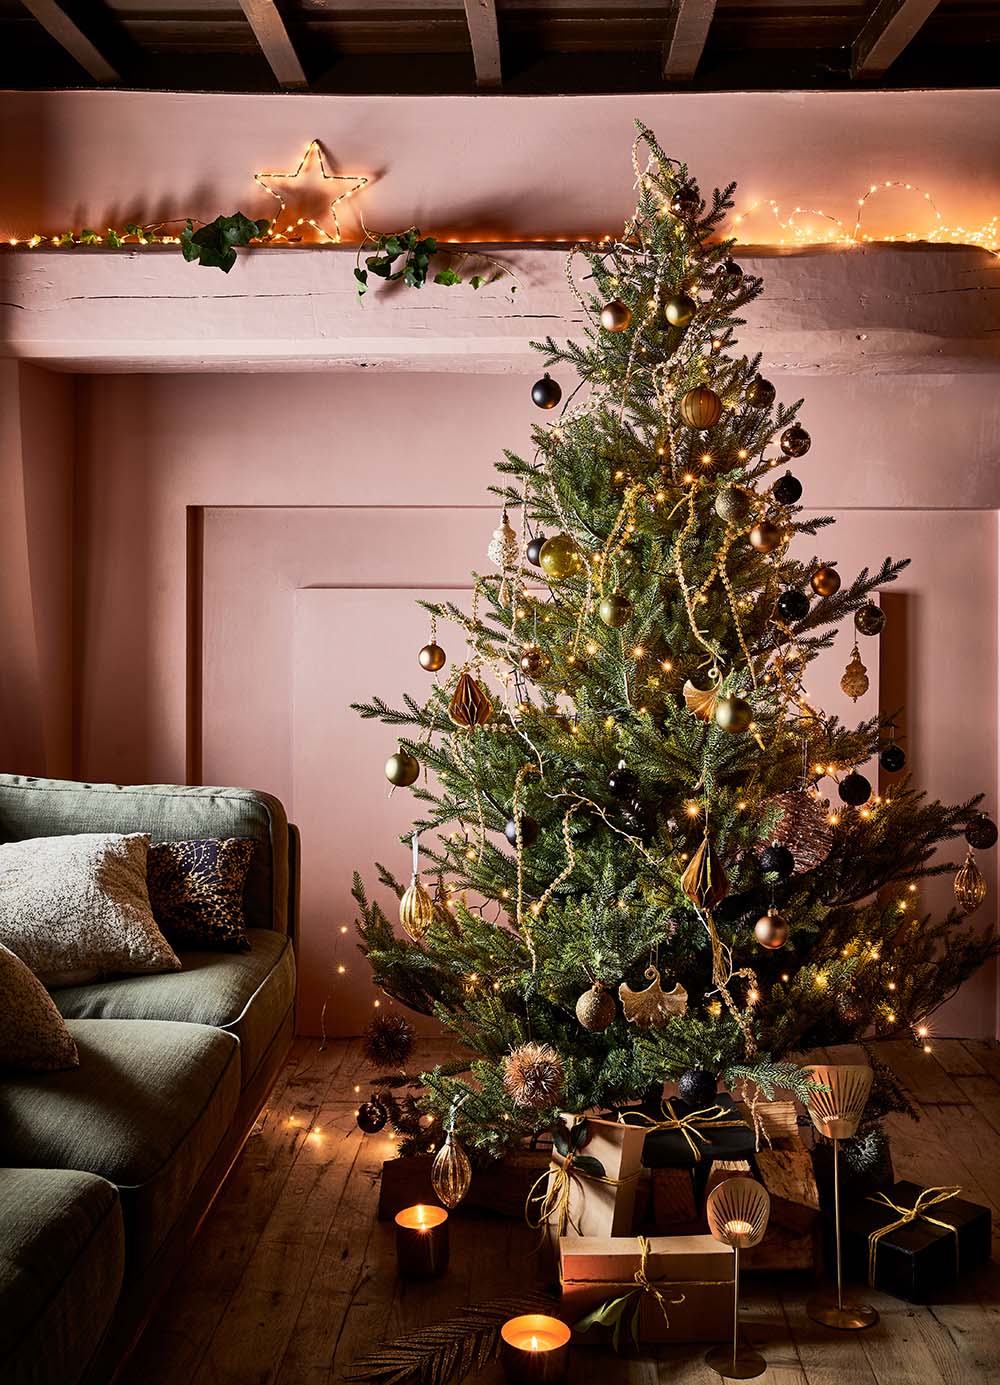 Guide noël : décorer son intérieur pour Noël – alinea